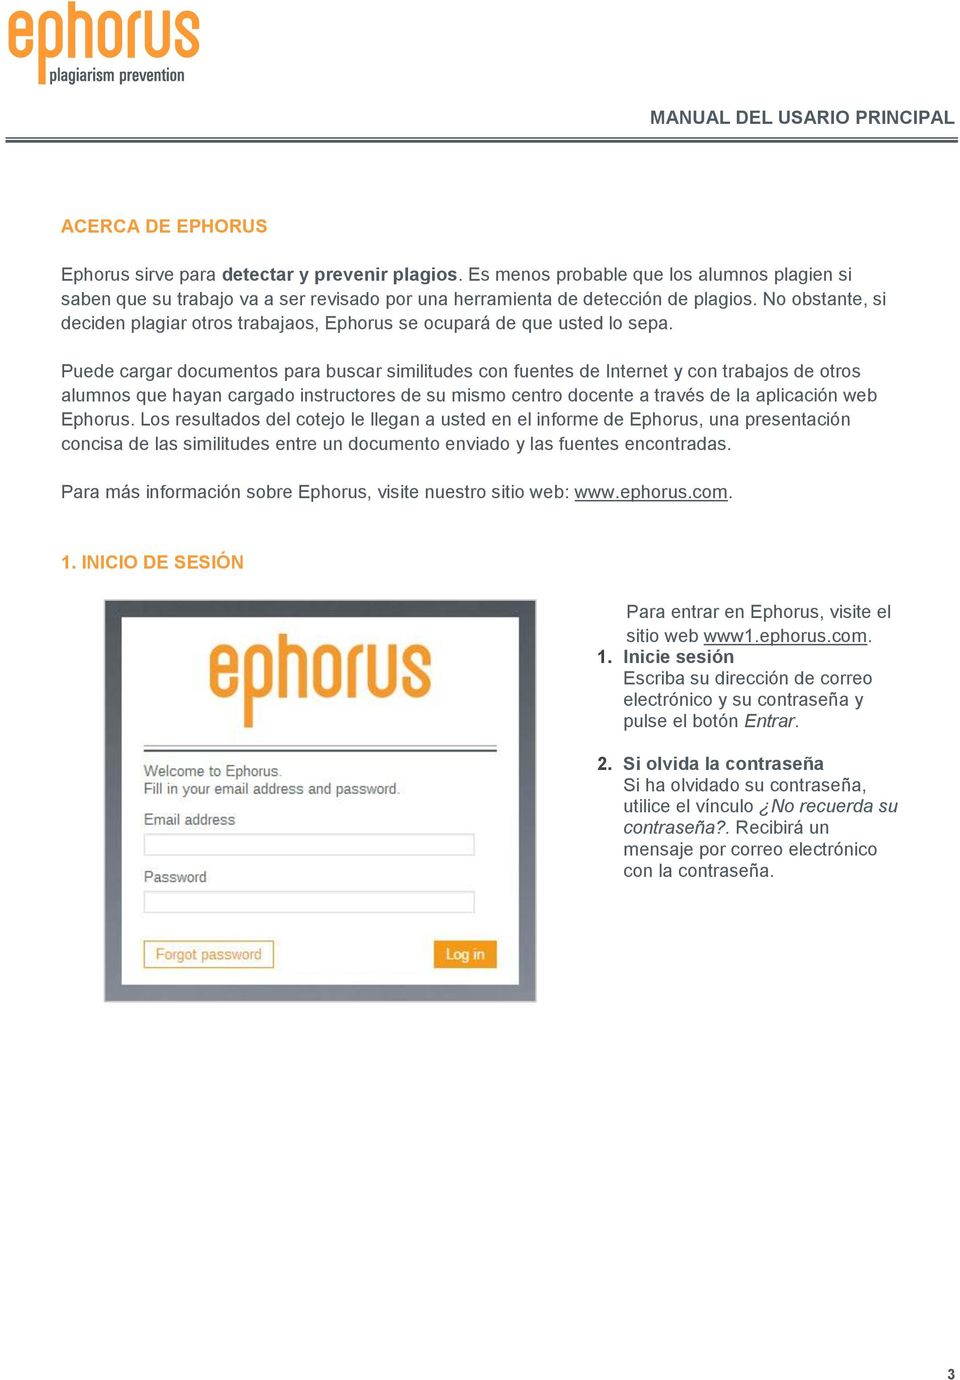 Puede cargar documentos para buscar similitudes con fuentes de Internet y con trabajos de otros alumnos que hayan cargado instructores de su mismo centro docente a través de la aplicación web Ephorus.